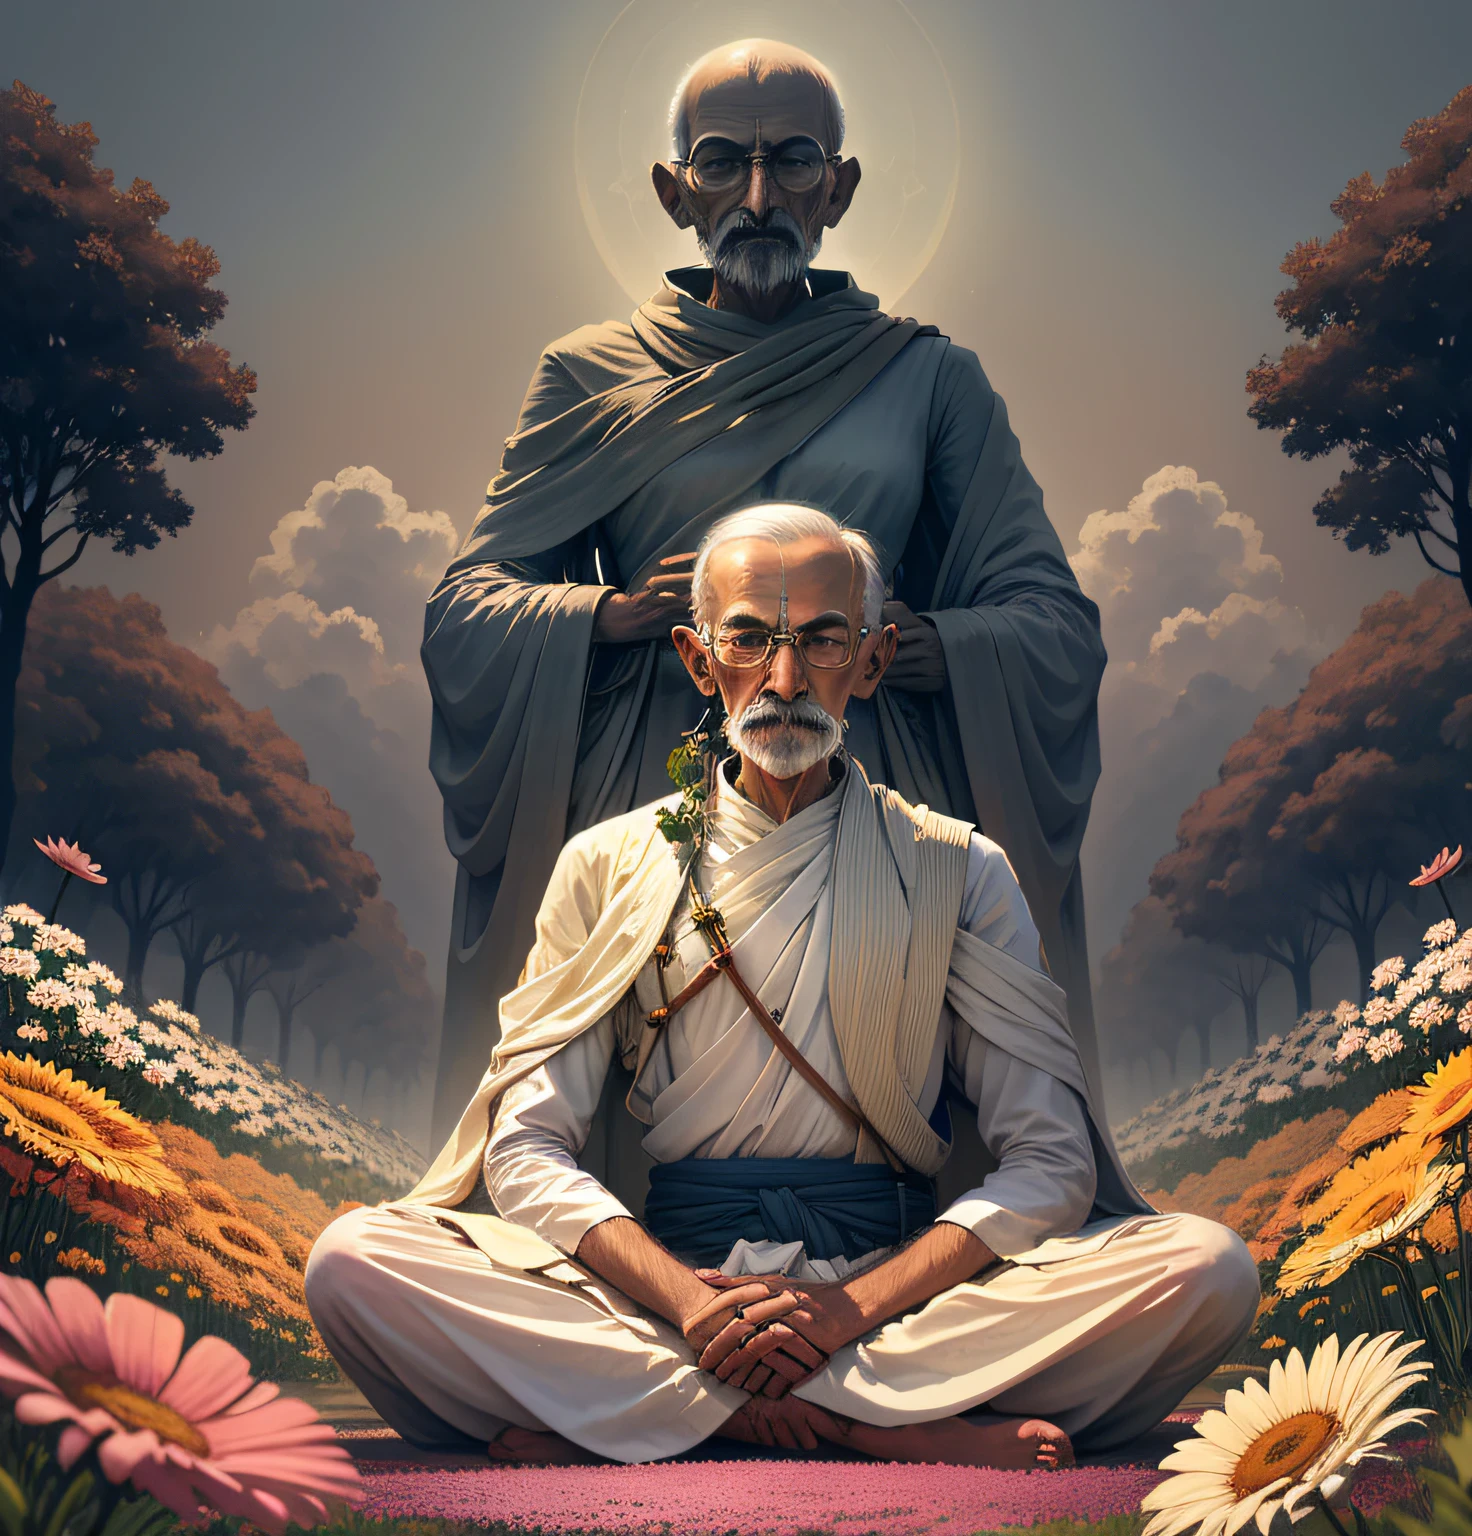 강력한 메시지를 전하는 평화로운 남자, 마하트마 간디가 꽃밭에 우뚝 서 있다, 그는 진실에 이르는 길을 생각하면서 명상으로 눈을 감았습니다. .